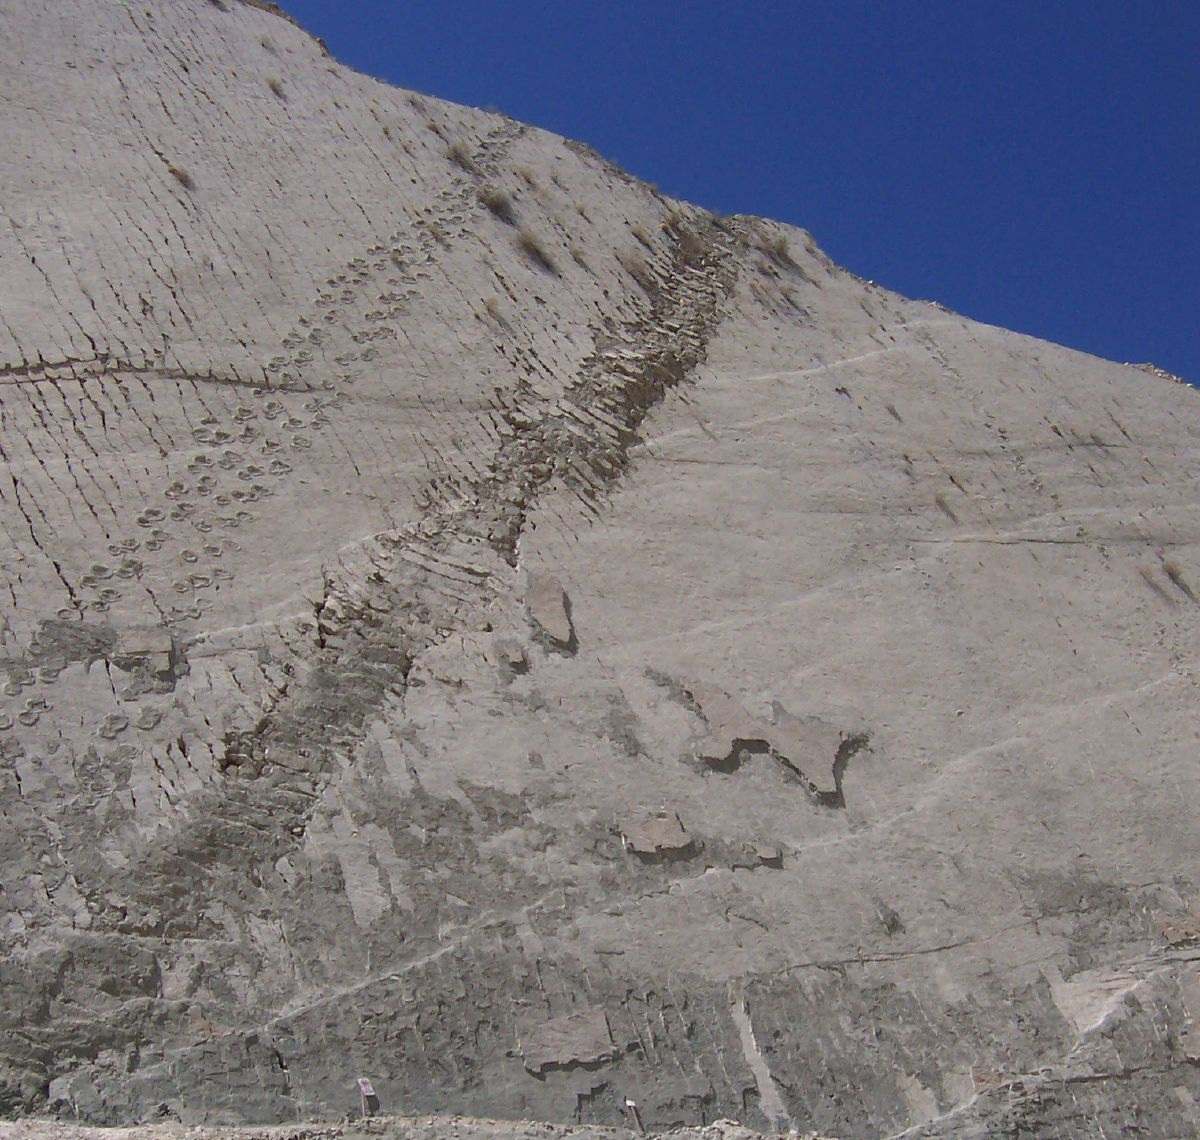 दीवार पर पैरों के निशान: क्या बोलीविया में डायनासोर वास्तव में चट्टानों पर चढ़ रहे थे? 6